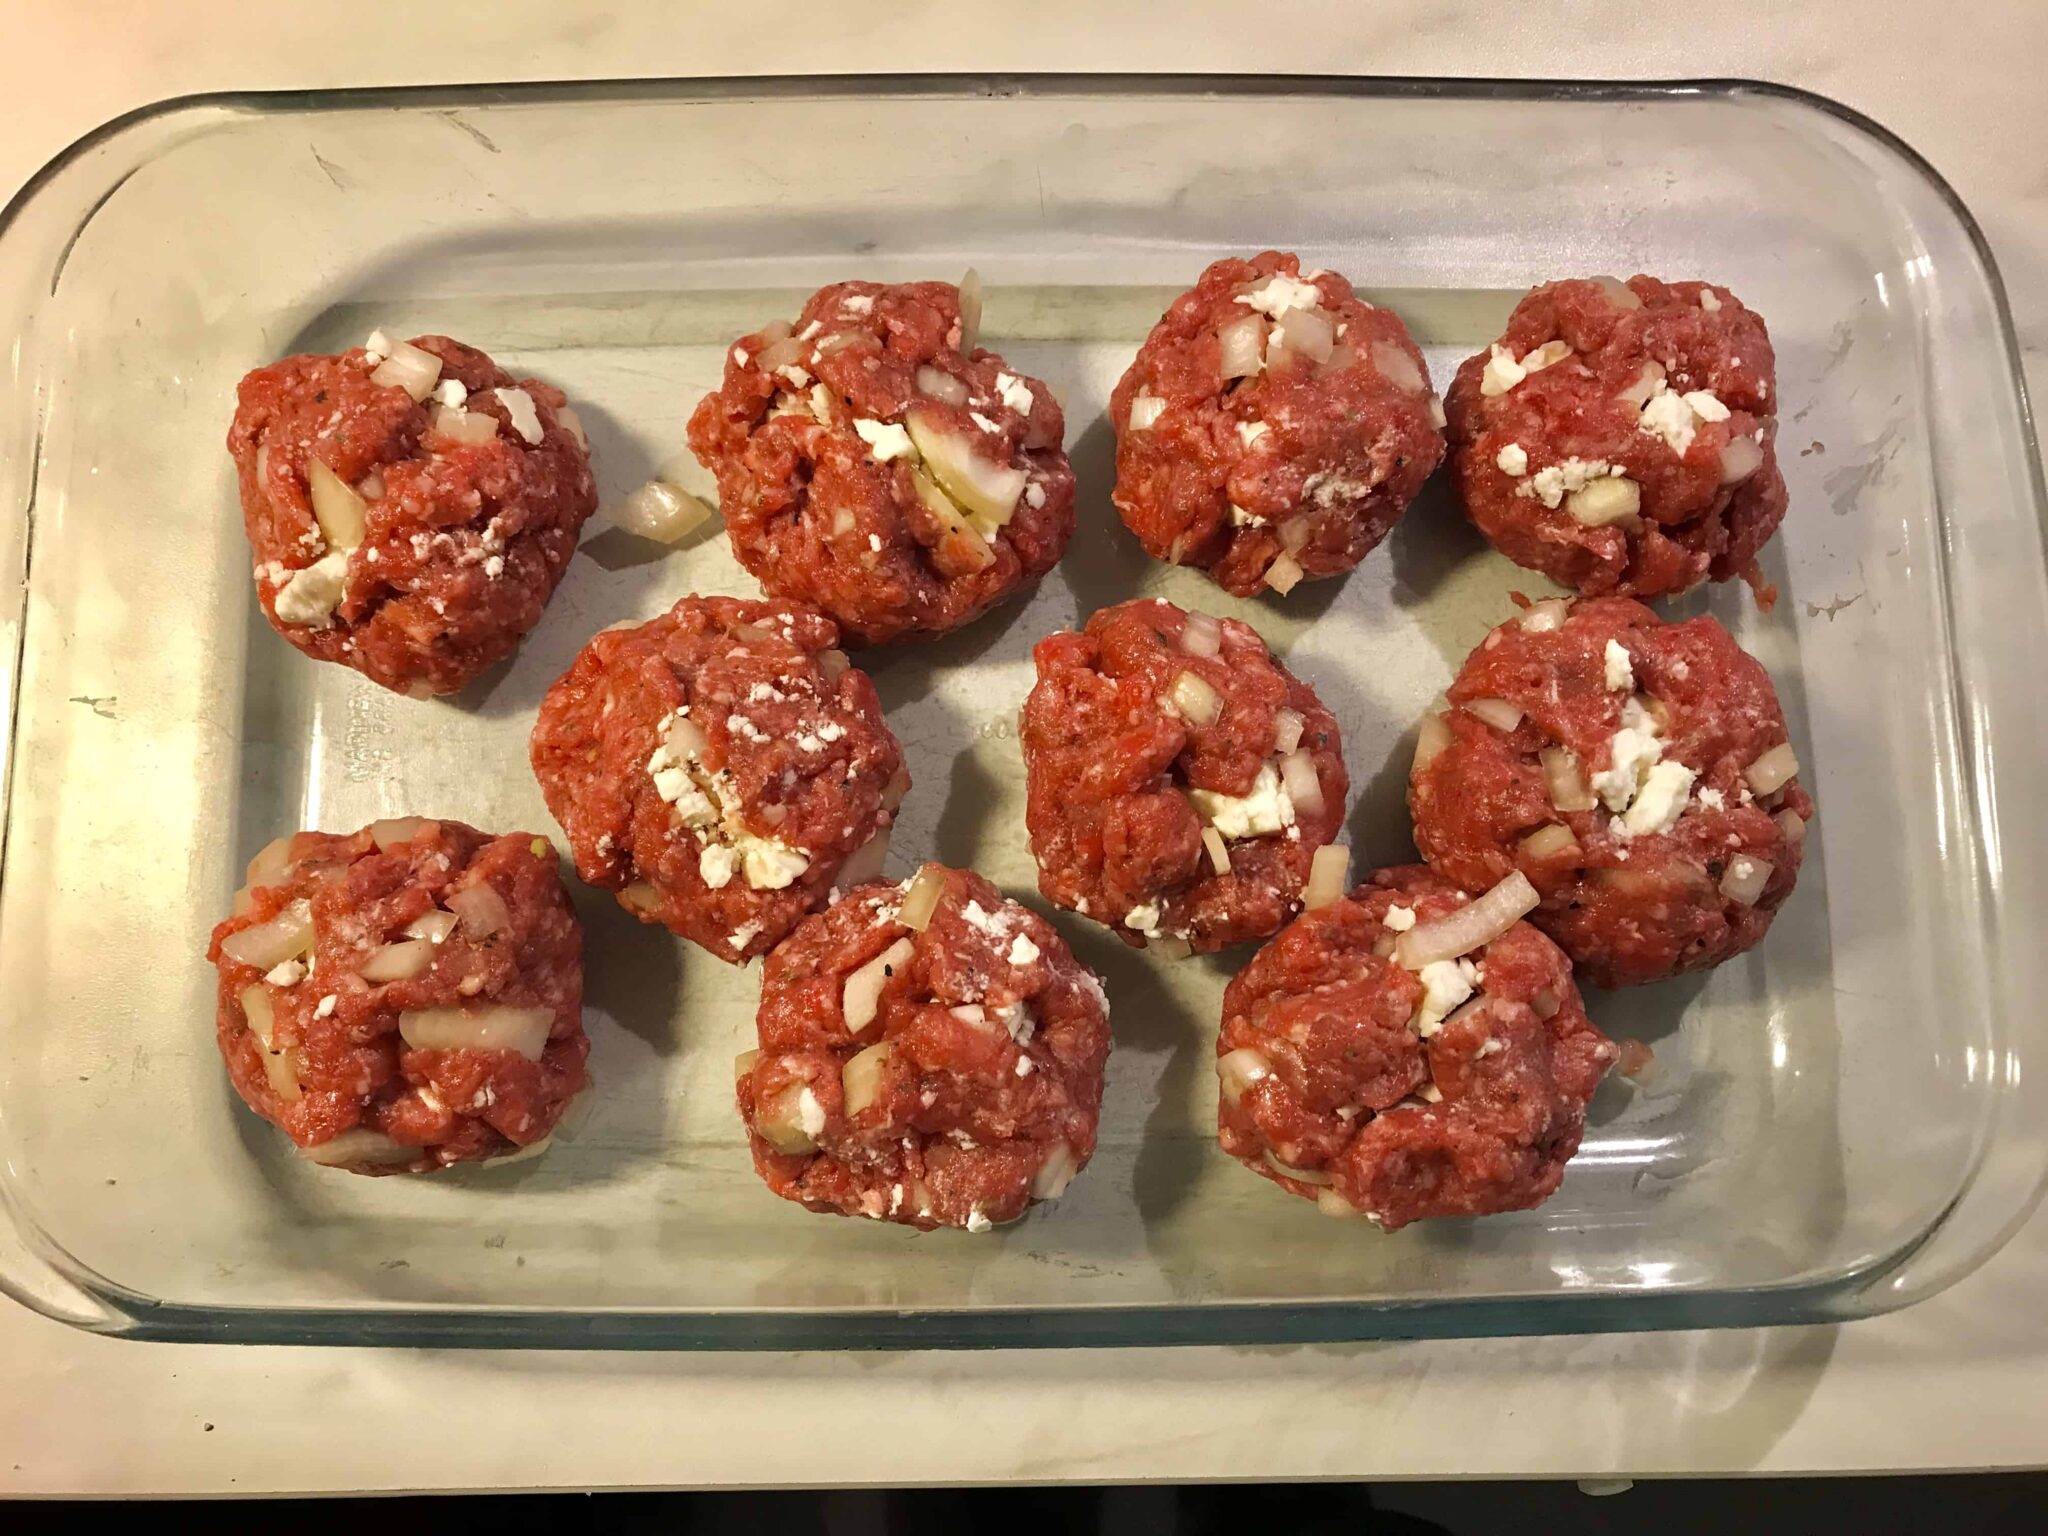 Davinas fetaostfyllda köttbullar i italiensk tomatsås.